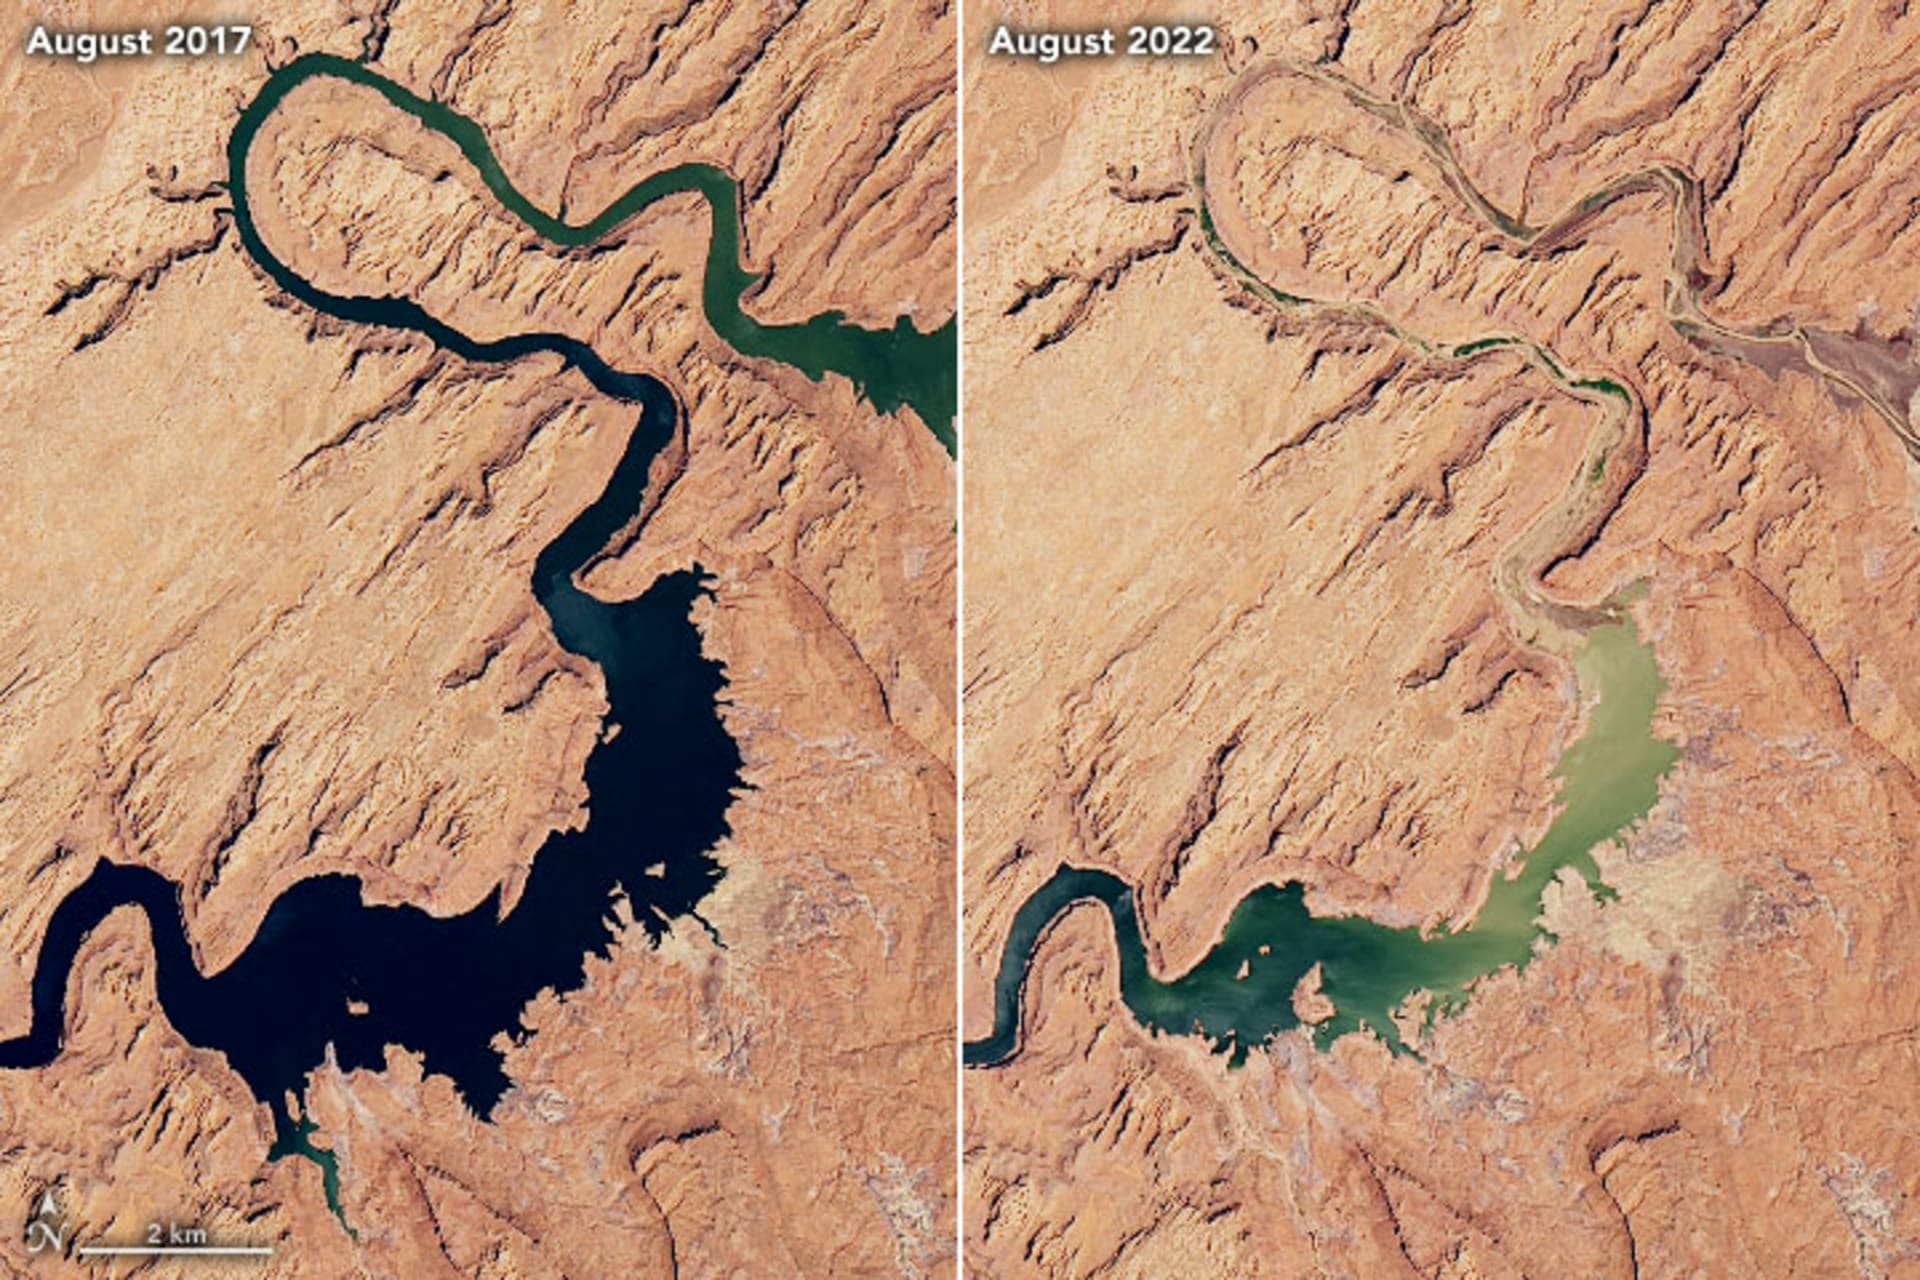 Vysychání americké nádrže Lake Powell mezi lety 2017 a 2022